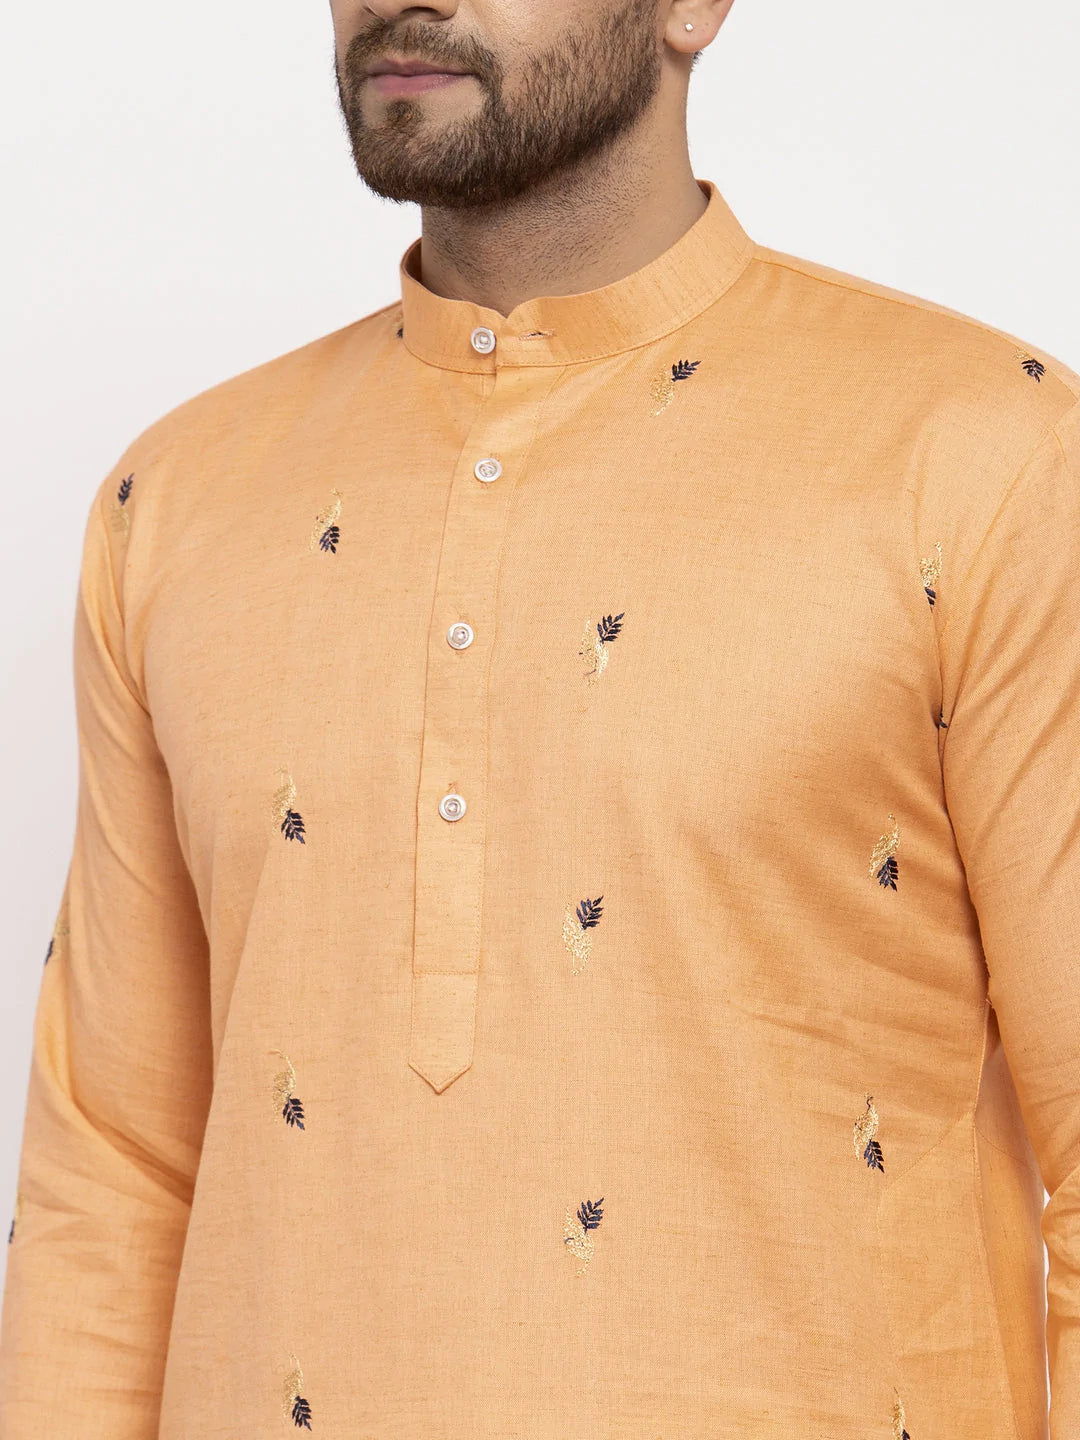 Men's Light Orange Cotton Abstract Kurta Top